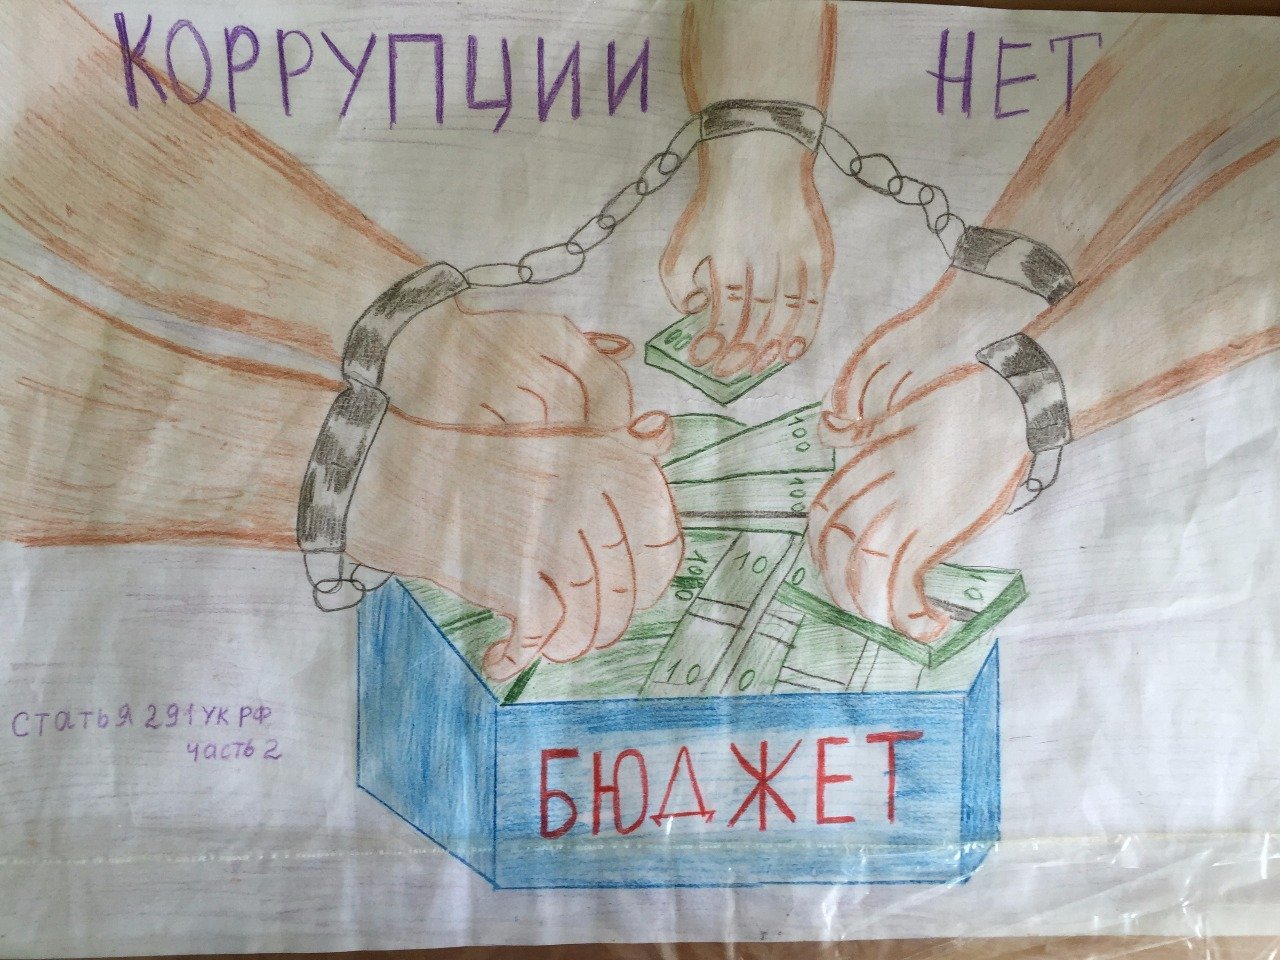 Плакат ко Дню коррупции